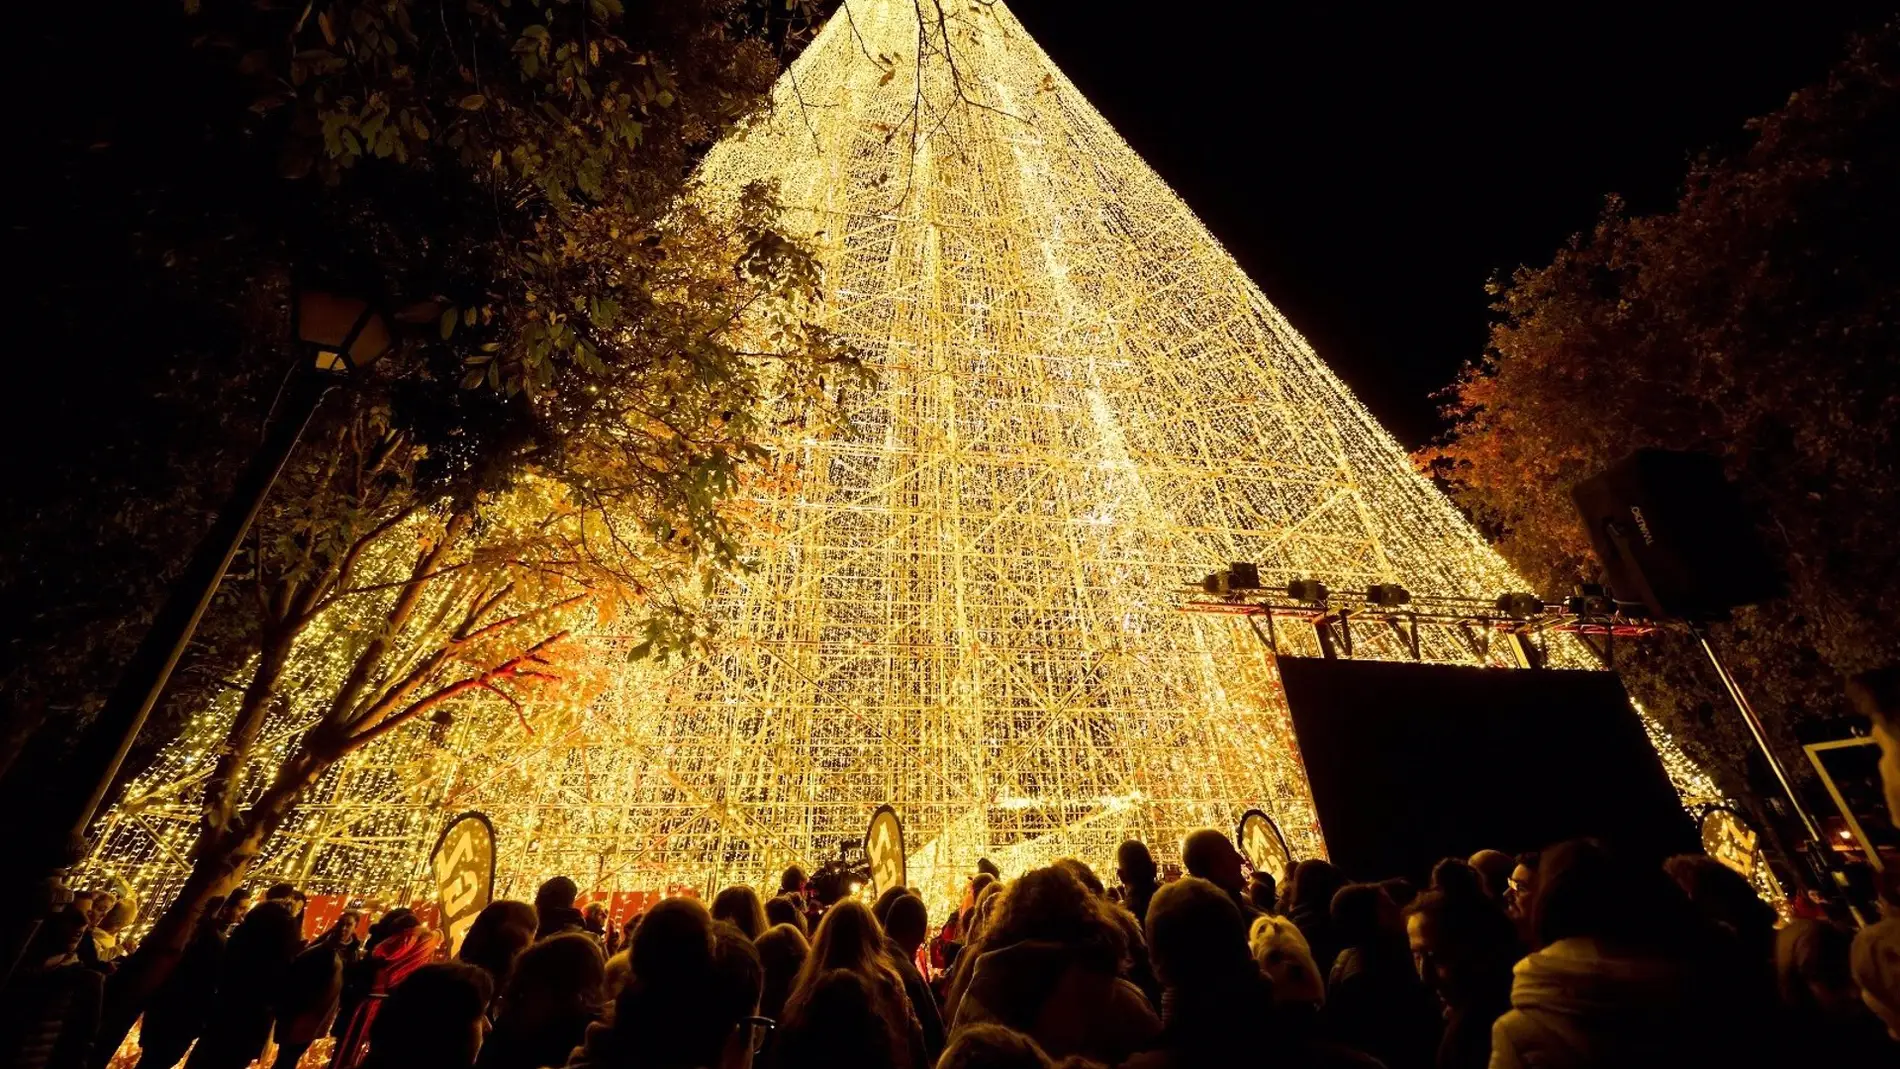 Cartes da la bienvenida a la Navidad con el árbol más alto de Europa